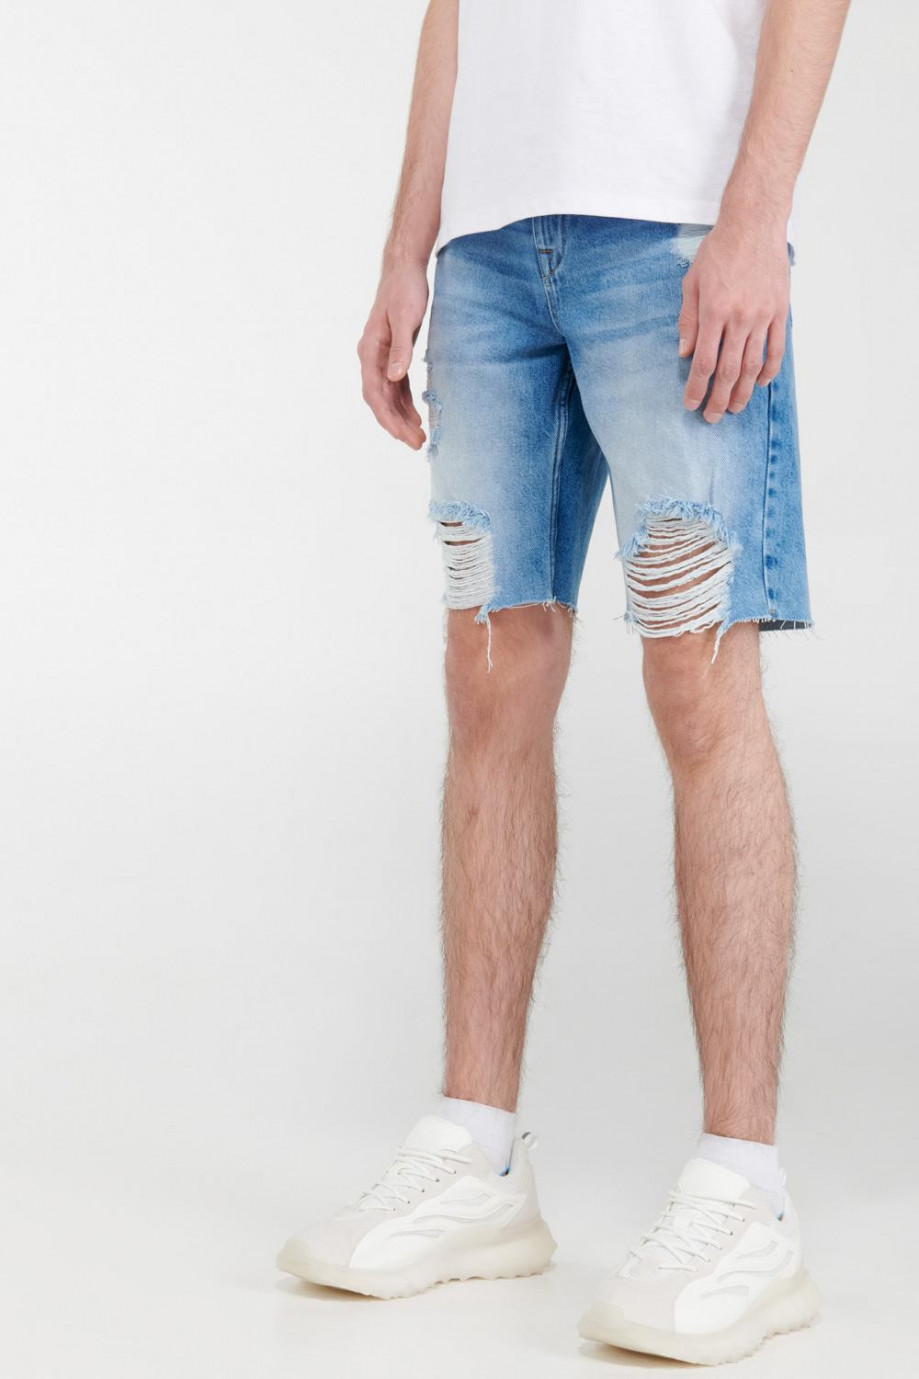 Bermuda en jean azul oscuro con rotos y deshilado en mangas